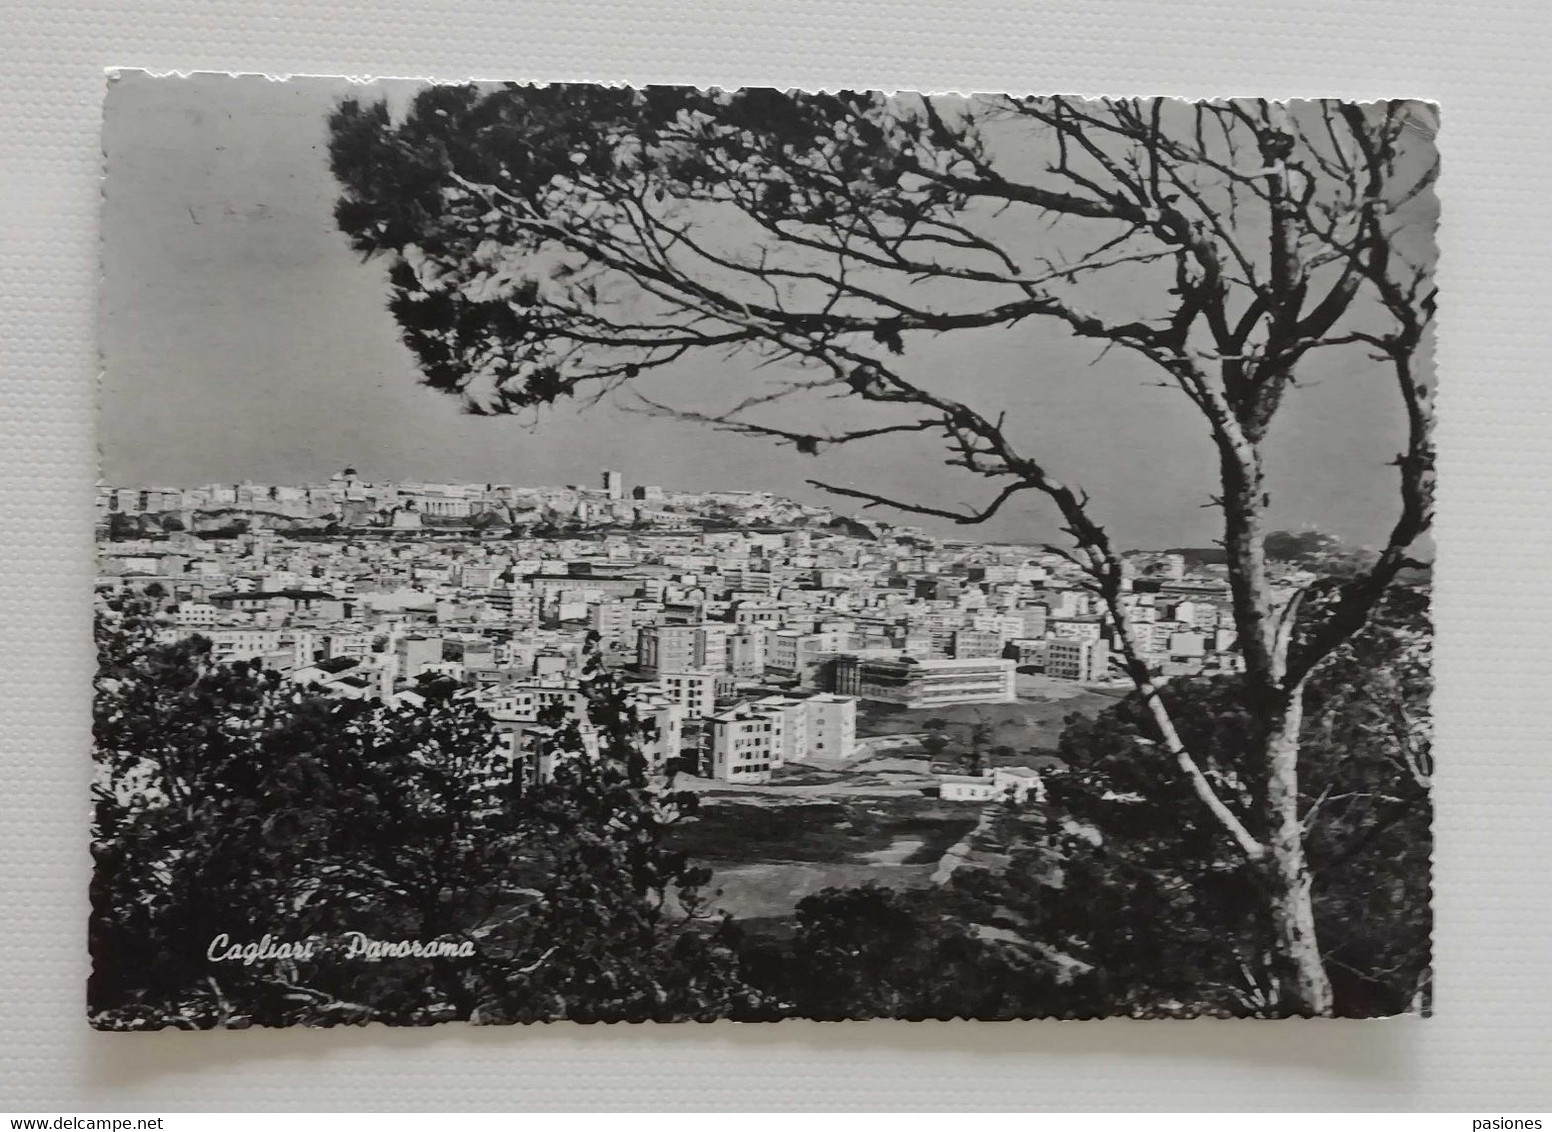 Cartolina Illustrata Cagliari - Panorama, Viaggiata 1959 - Cagliari